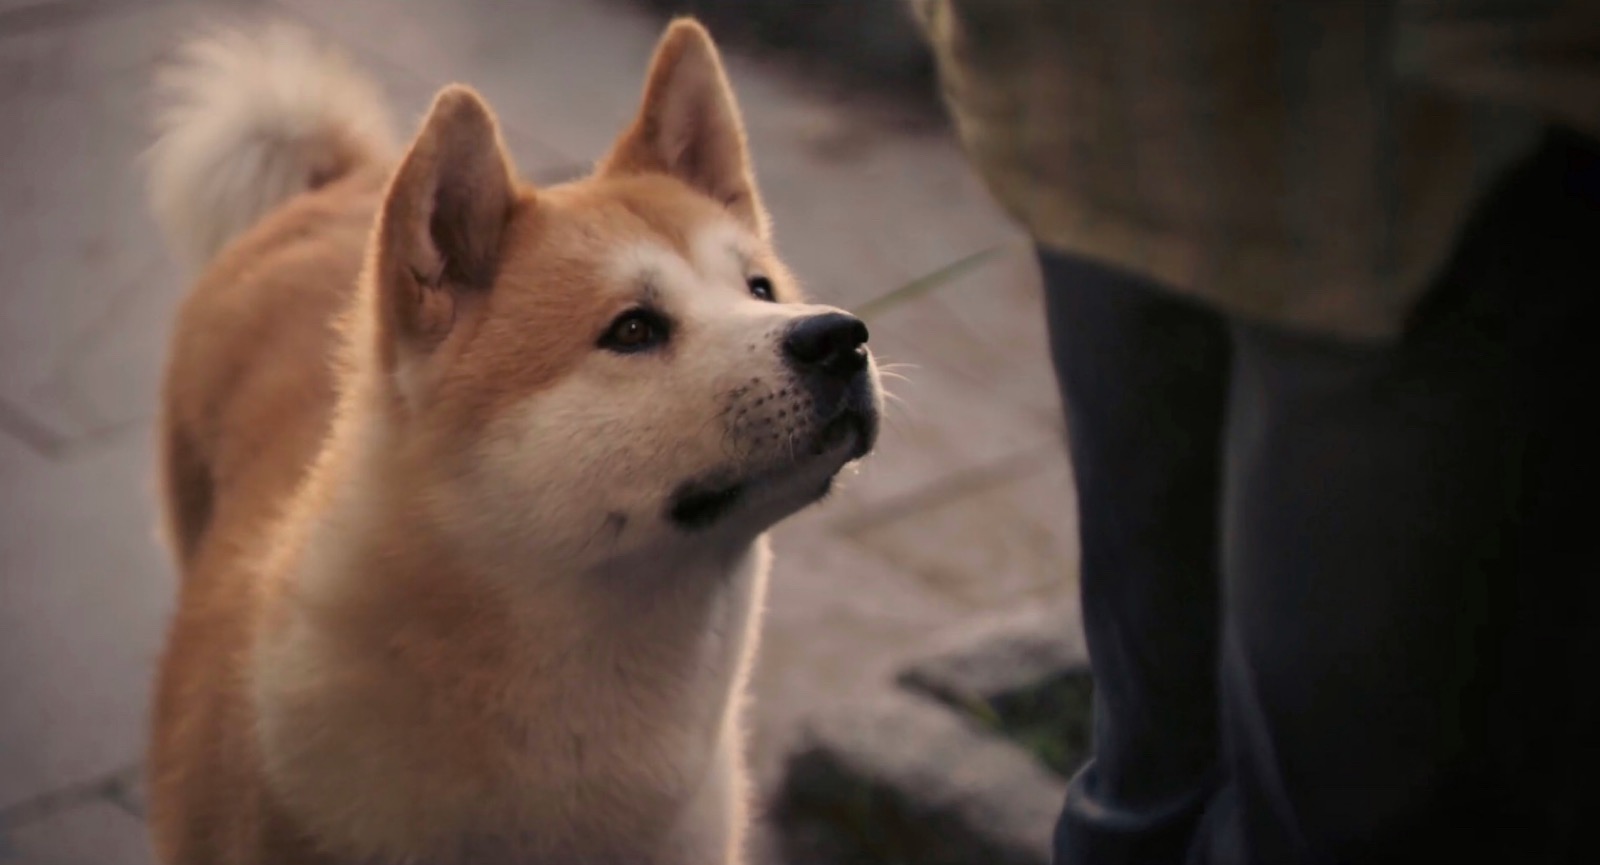 忠犬八公的故事 宣传片 第一次用Pr 纪念当年感触最深的电影